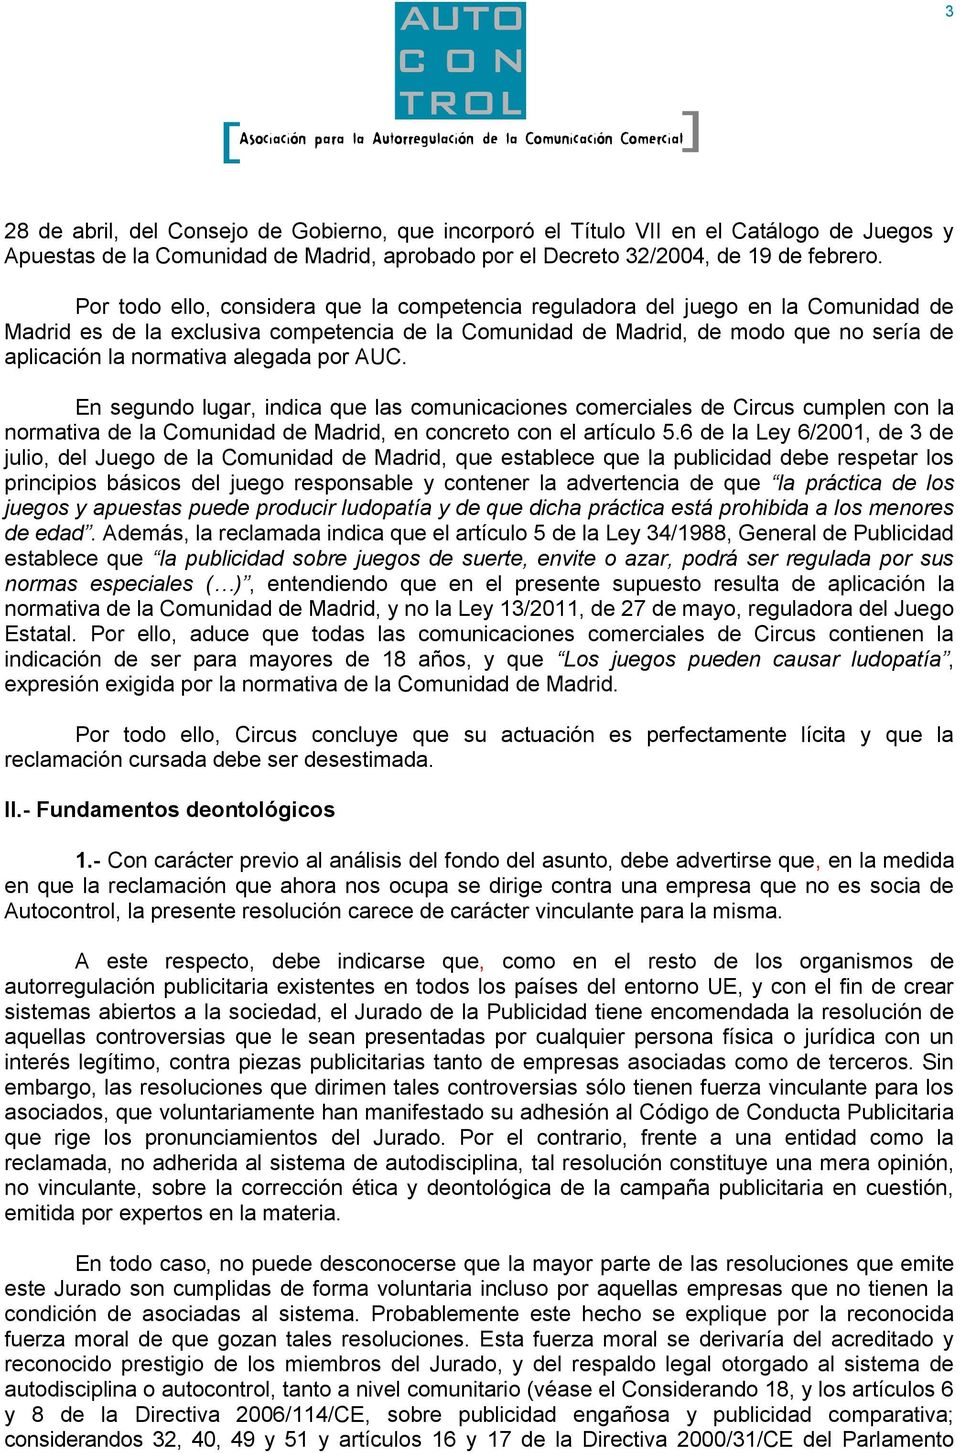 alegada por AUC. En segundo lugar, indica que las comunicaciones comerciales de Circus cumplen con la normativa de la Comunidad de Madrid, en concreto con el artículo 5.